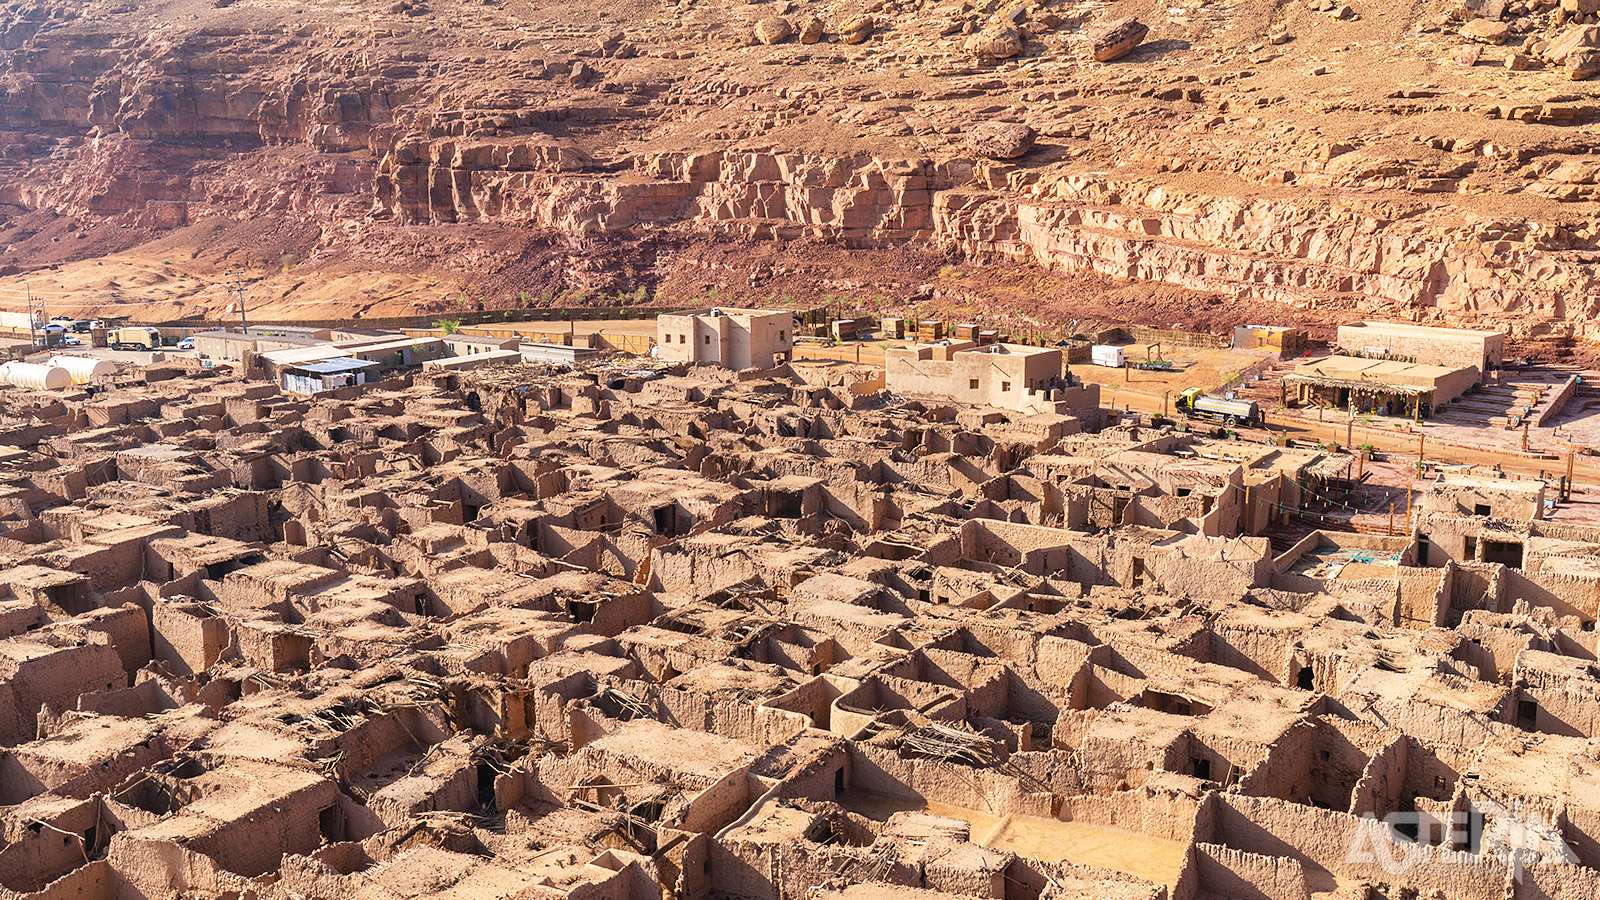 De Oude Stad van AlUla was in de 12de eeuw een belangrijke nederzetting langs de pelgrimsroute van Damascus naar Mekka